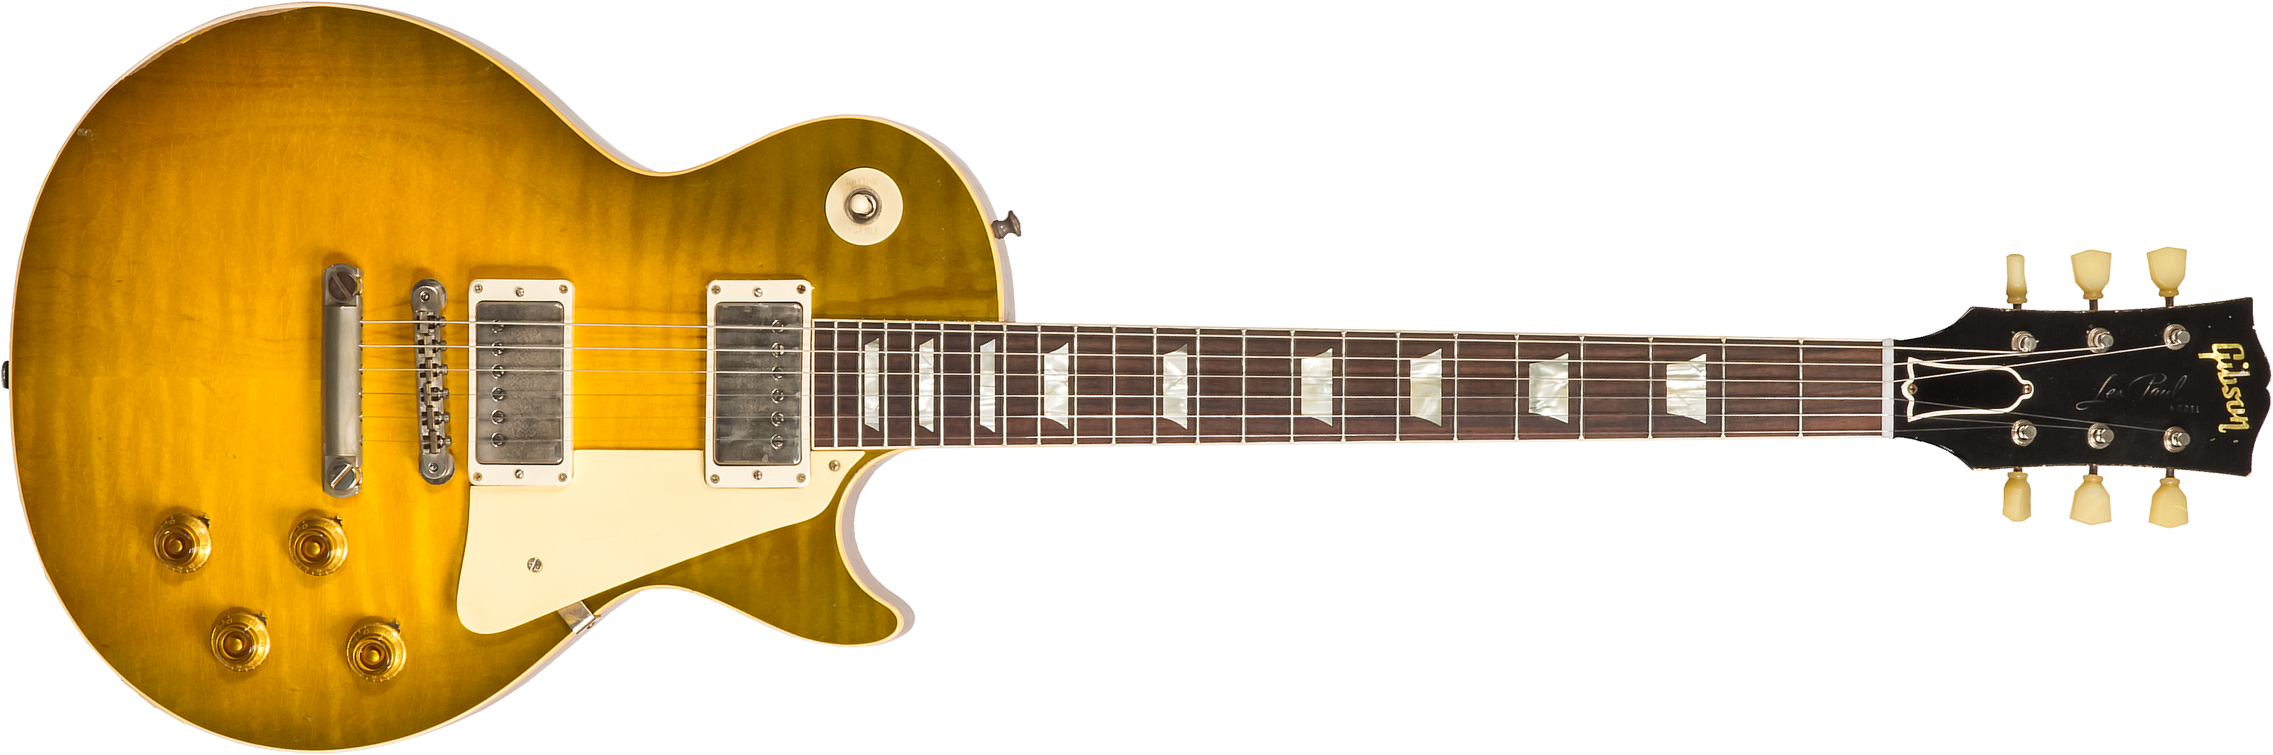 Gibson Custom Shop Murphy Lab Les Paul Standard 1959 Reissue 2h Ht Rw #93515 - Heavy Aged Green Lemon Fade - Guitare Électrique Single Cut - Main pict